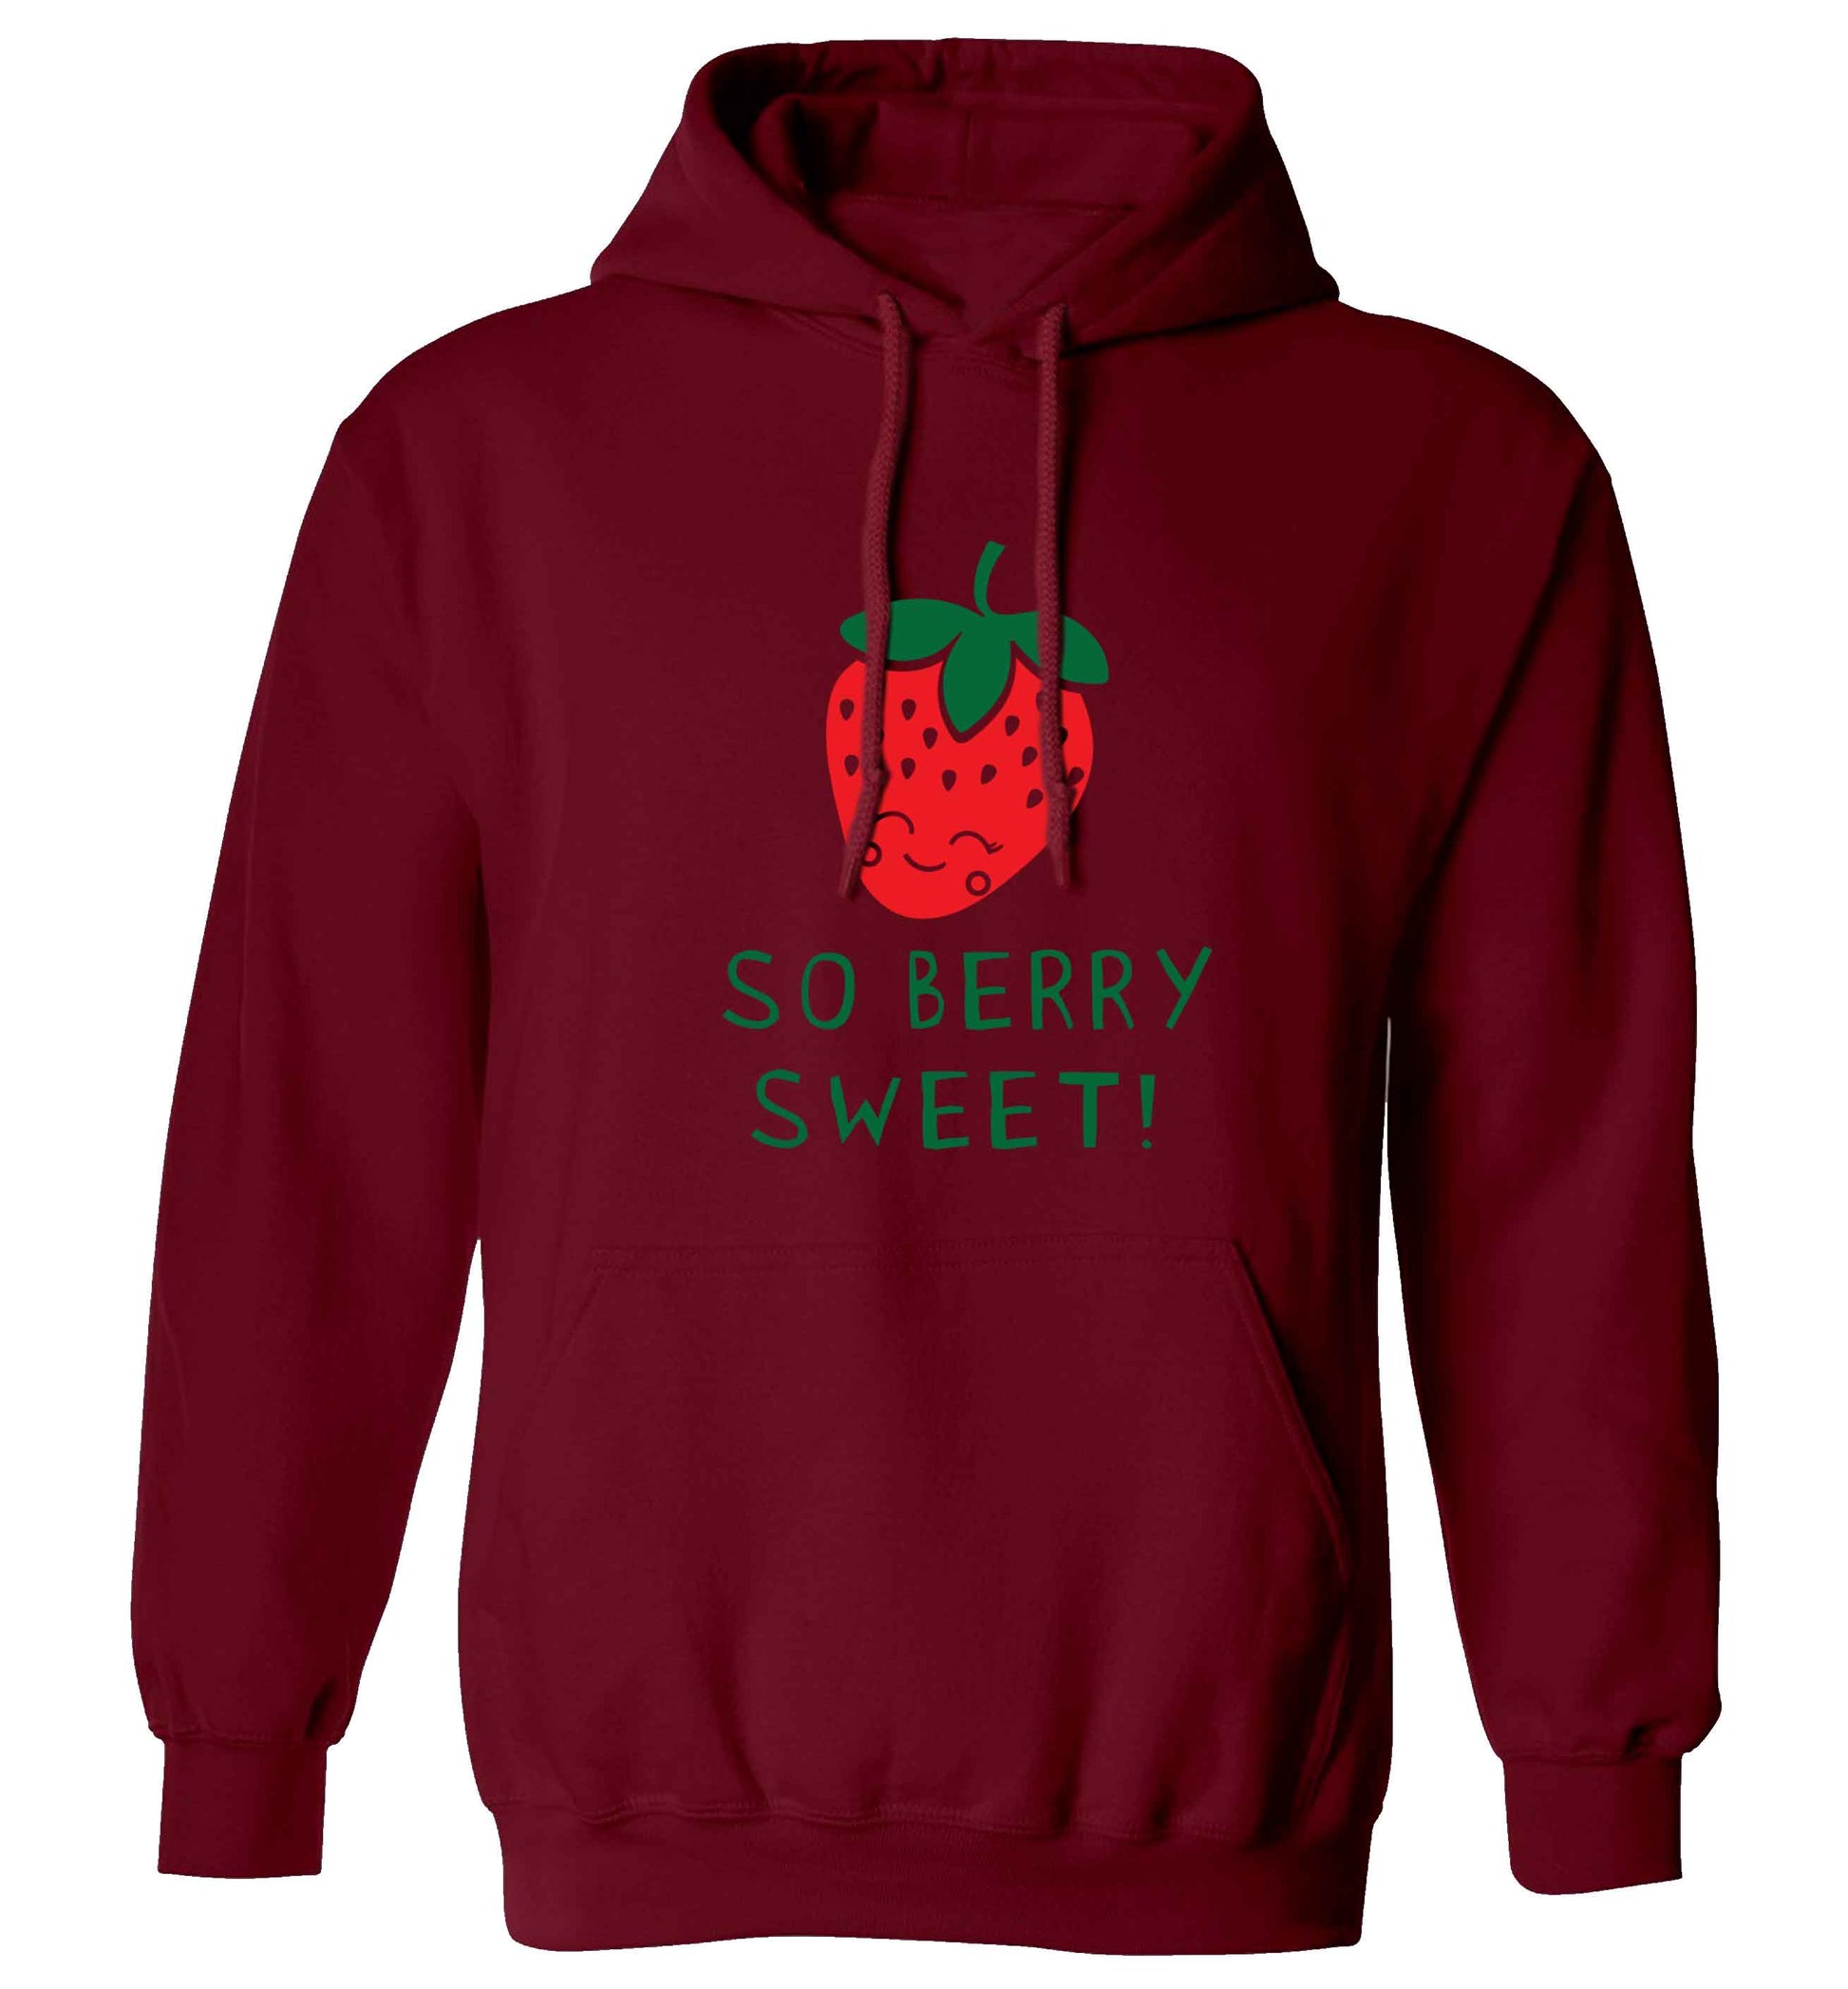 So berry sweet adults unisex maroon hoodie 2XL